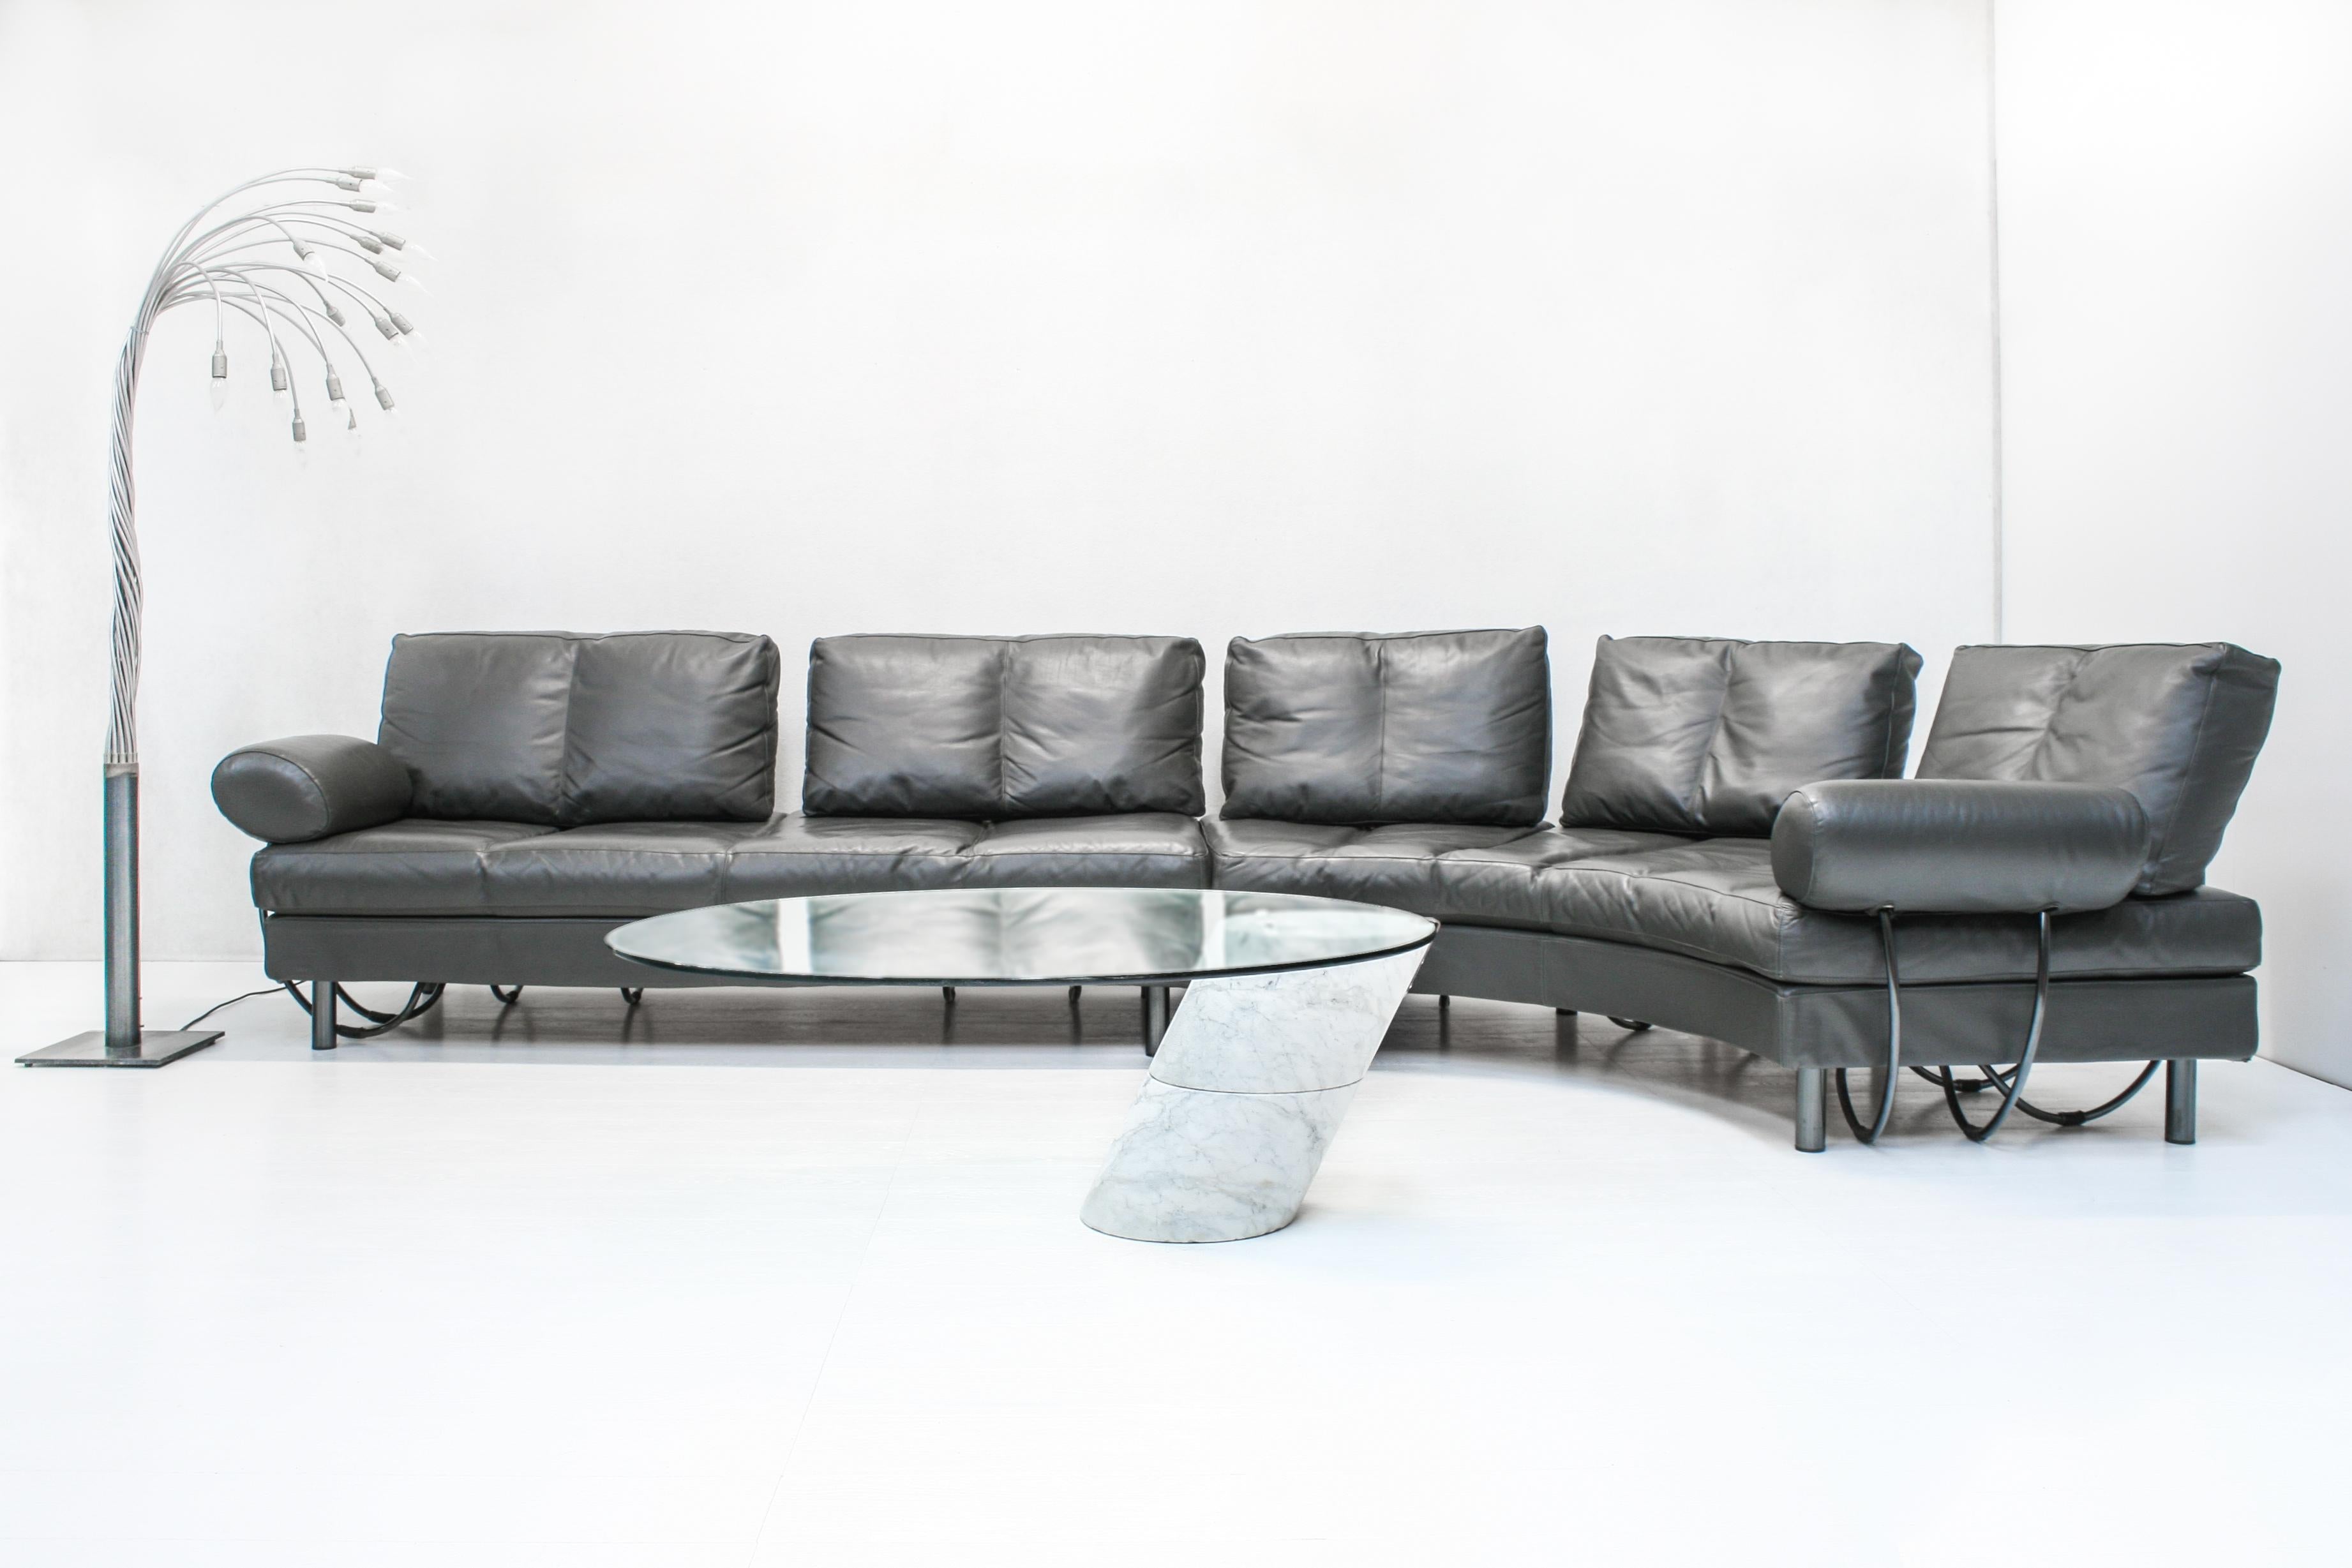 Das multifunktionale und modulare Sofa Divano Europa wurde von Gianfranco Gualtierotti und Alessandro Mazzoni Delle Stelle entworfen und von Zanotta, Italien, hergestellt.

Die Position der Rückenlehne und der Armlehnen kann nach Belieben variiert